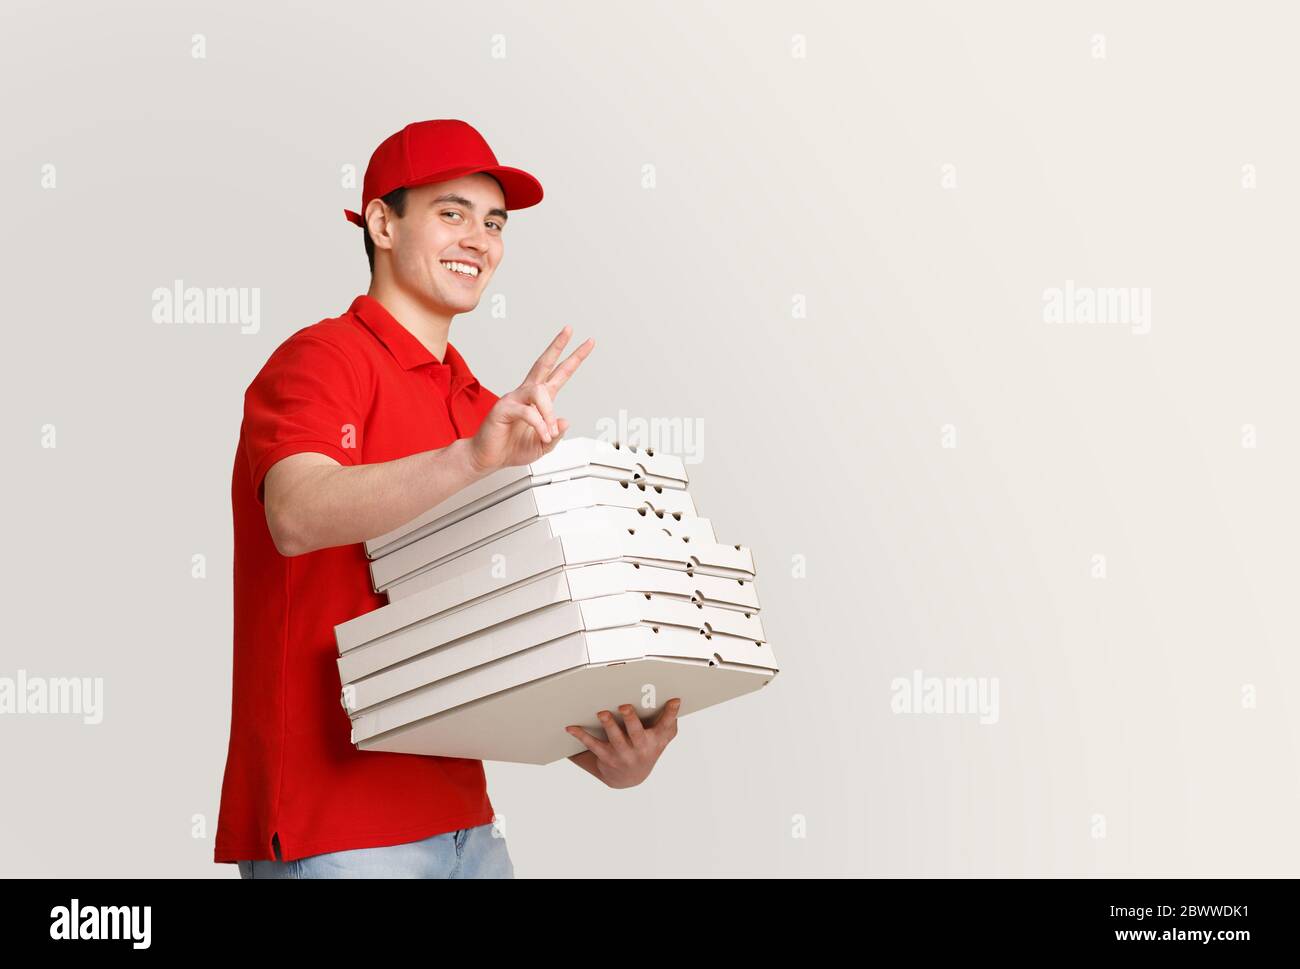 Beaucoup de pizza à la maison. Un coursier souriant affiche le signe de paix et contient de nombreuses boîtes Banque D'Images